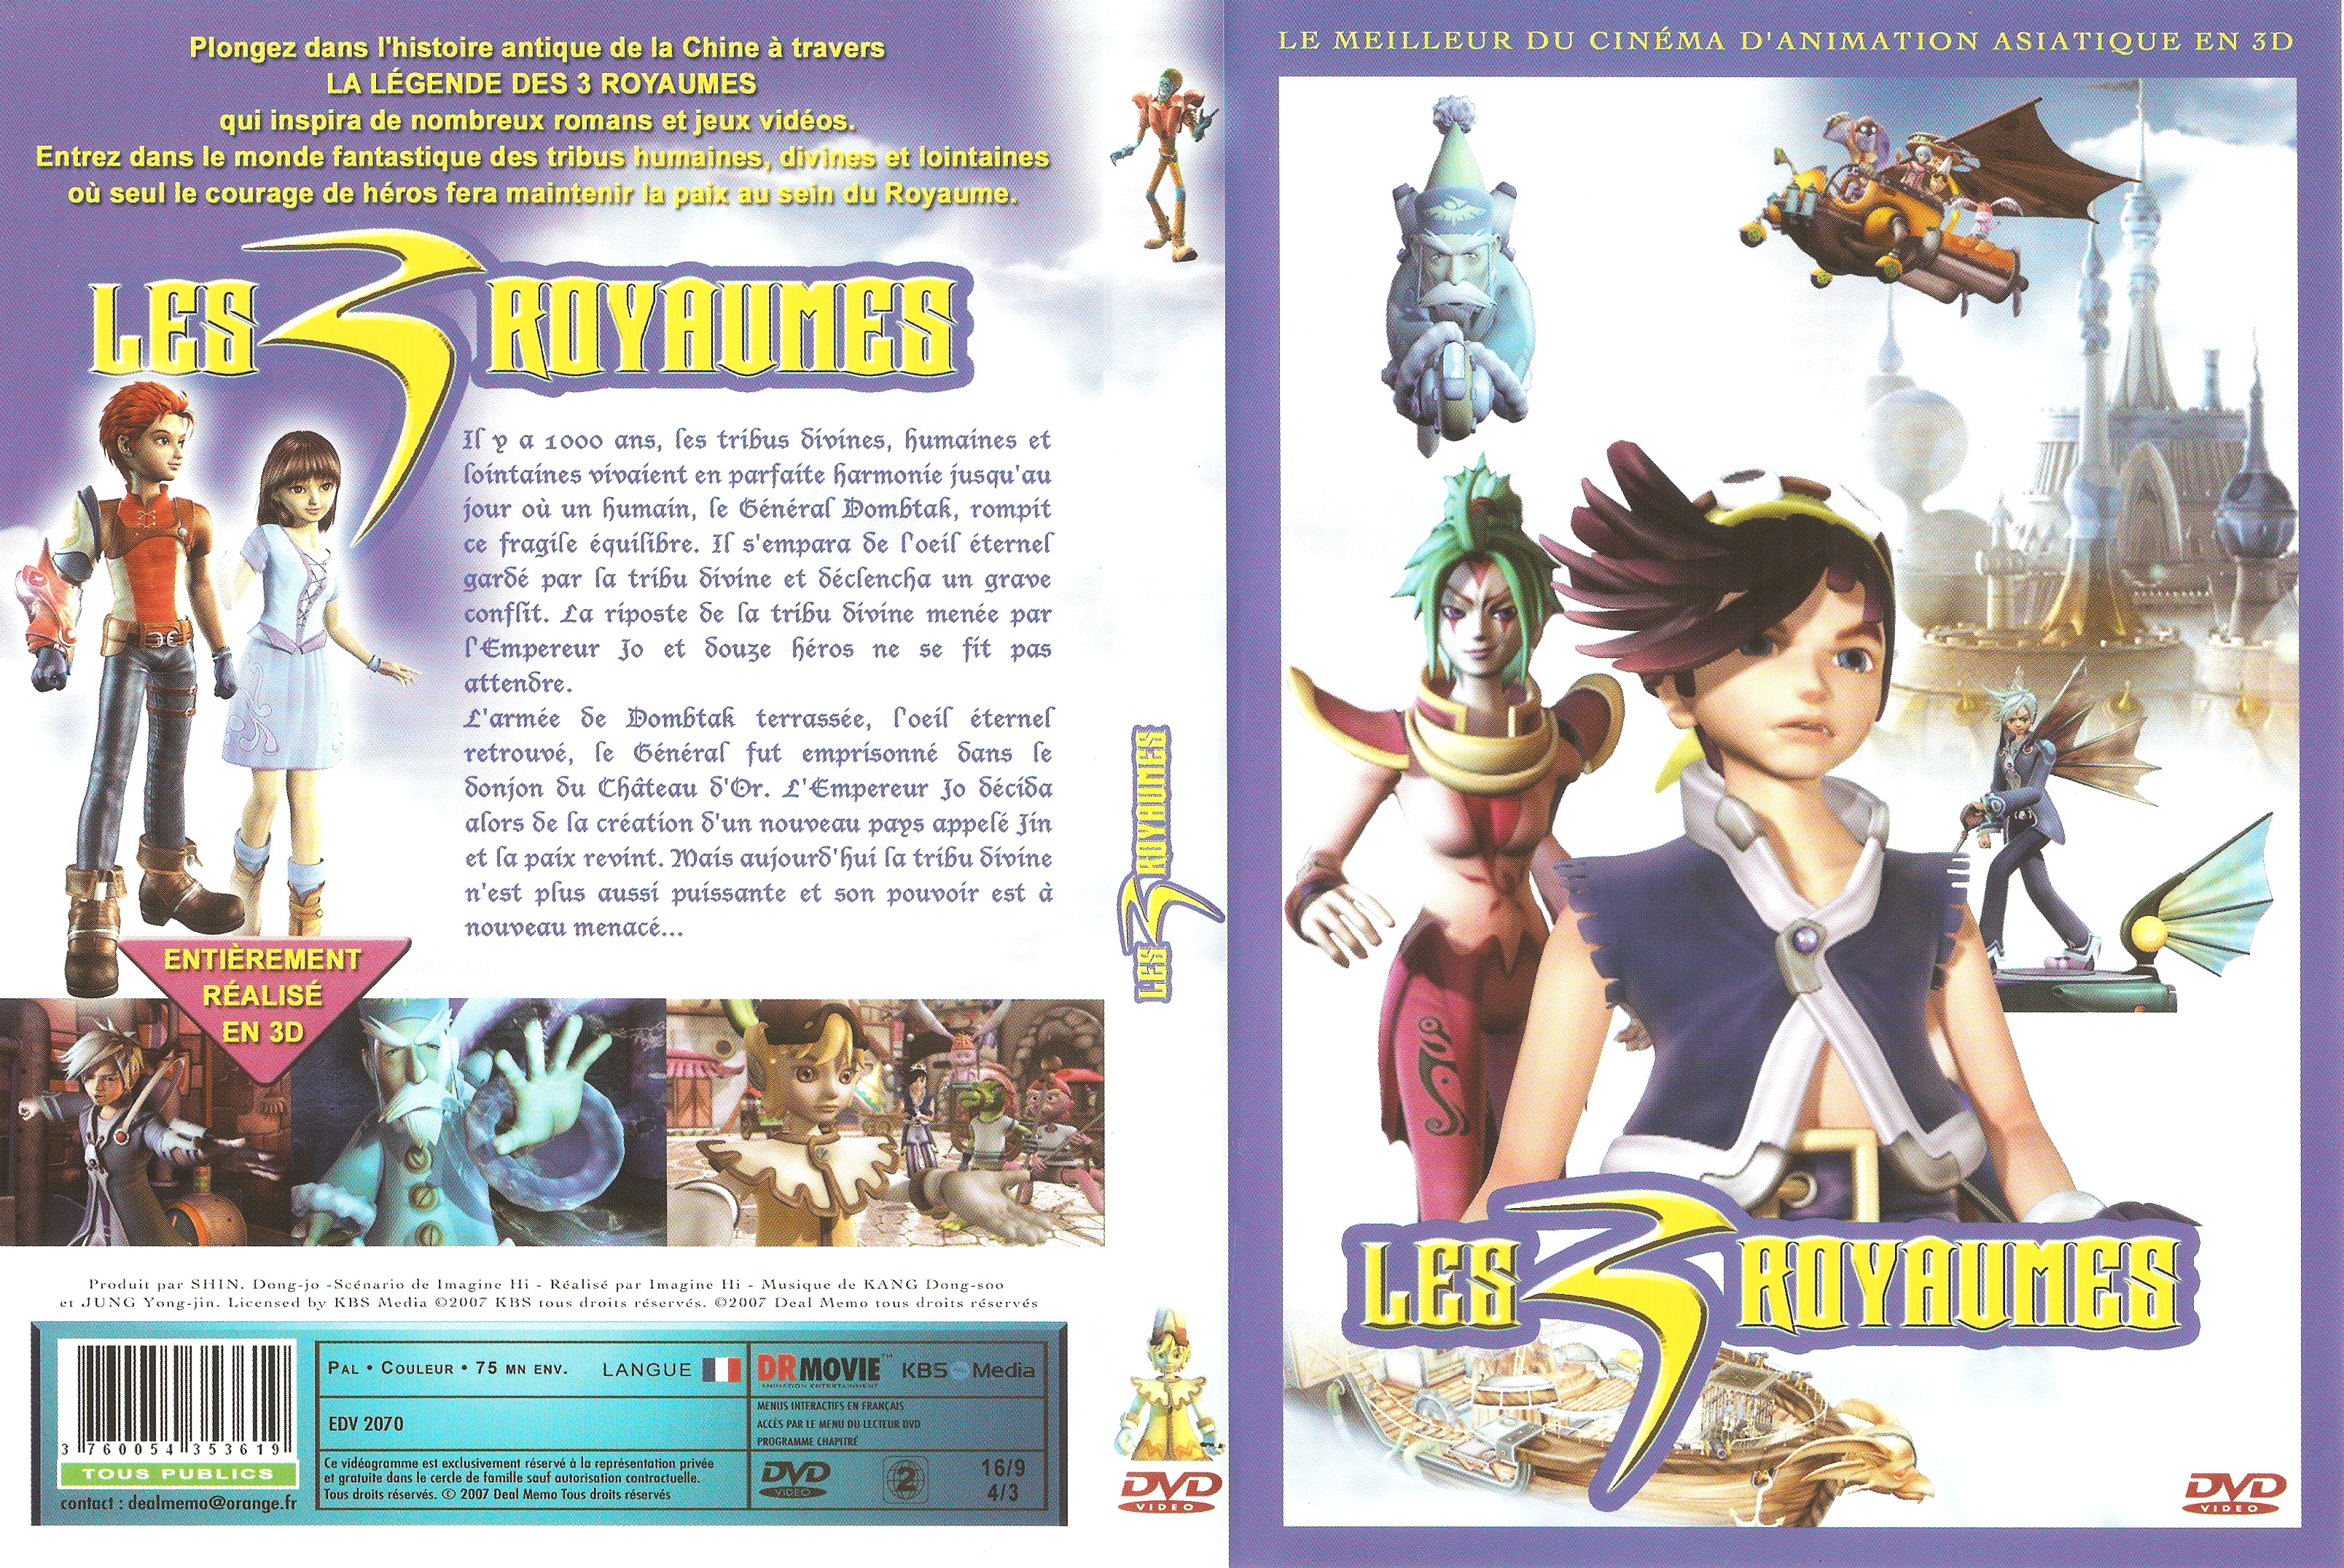 Jaquette DVD Les 3 royaumes (DA)